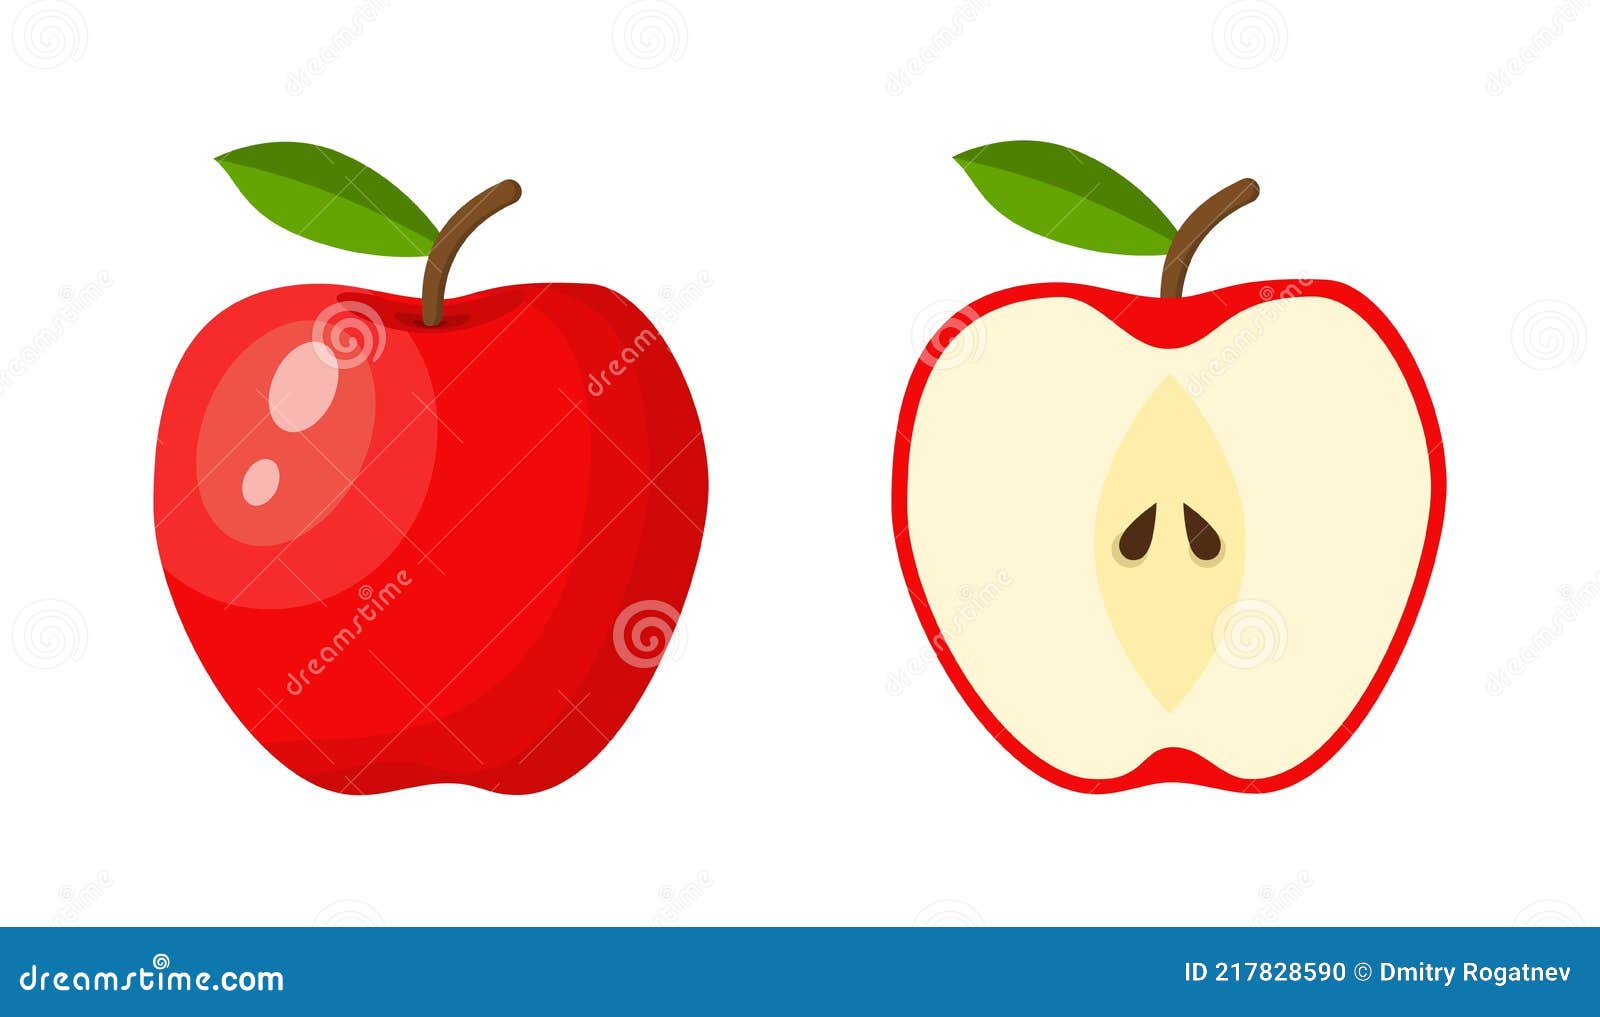 Рисунок на тему яблоко